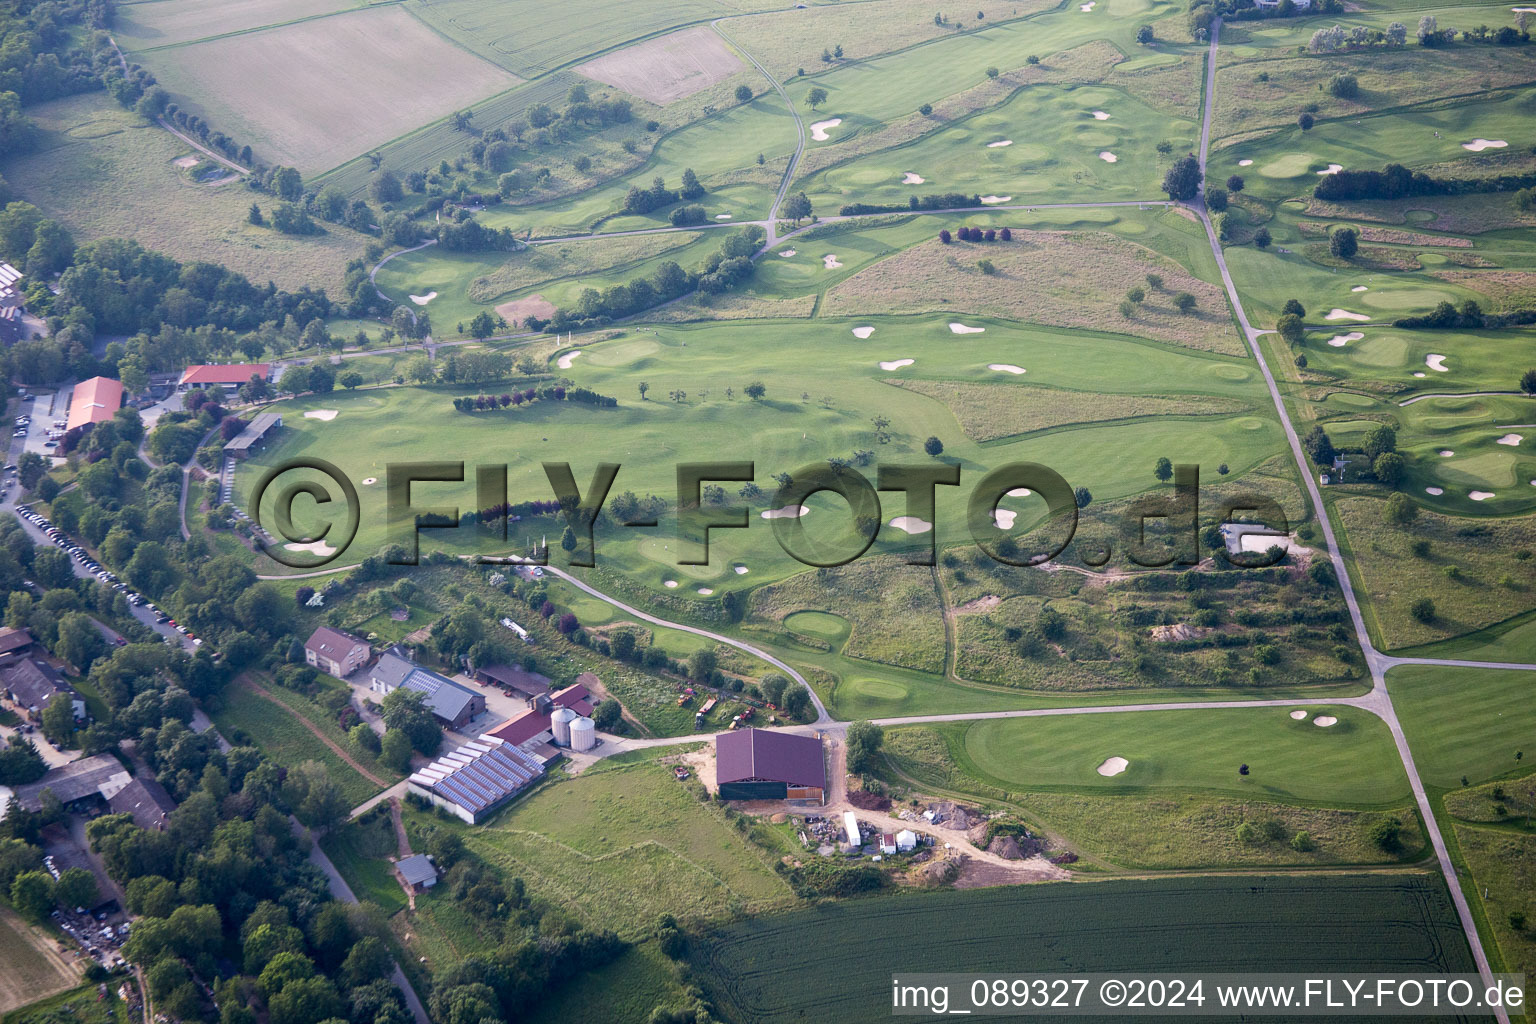 Photographie aérienne de Terrain du Golfclub Bruchsa à Bruchsal dans le département Bade-Wurtemberg, Allemagne